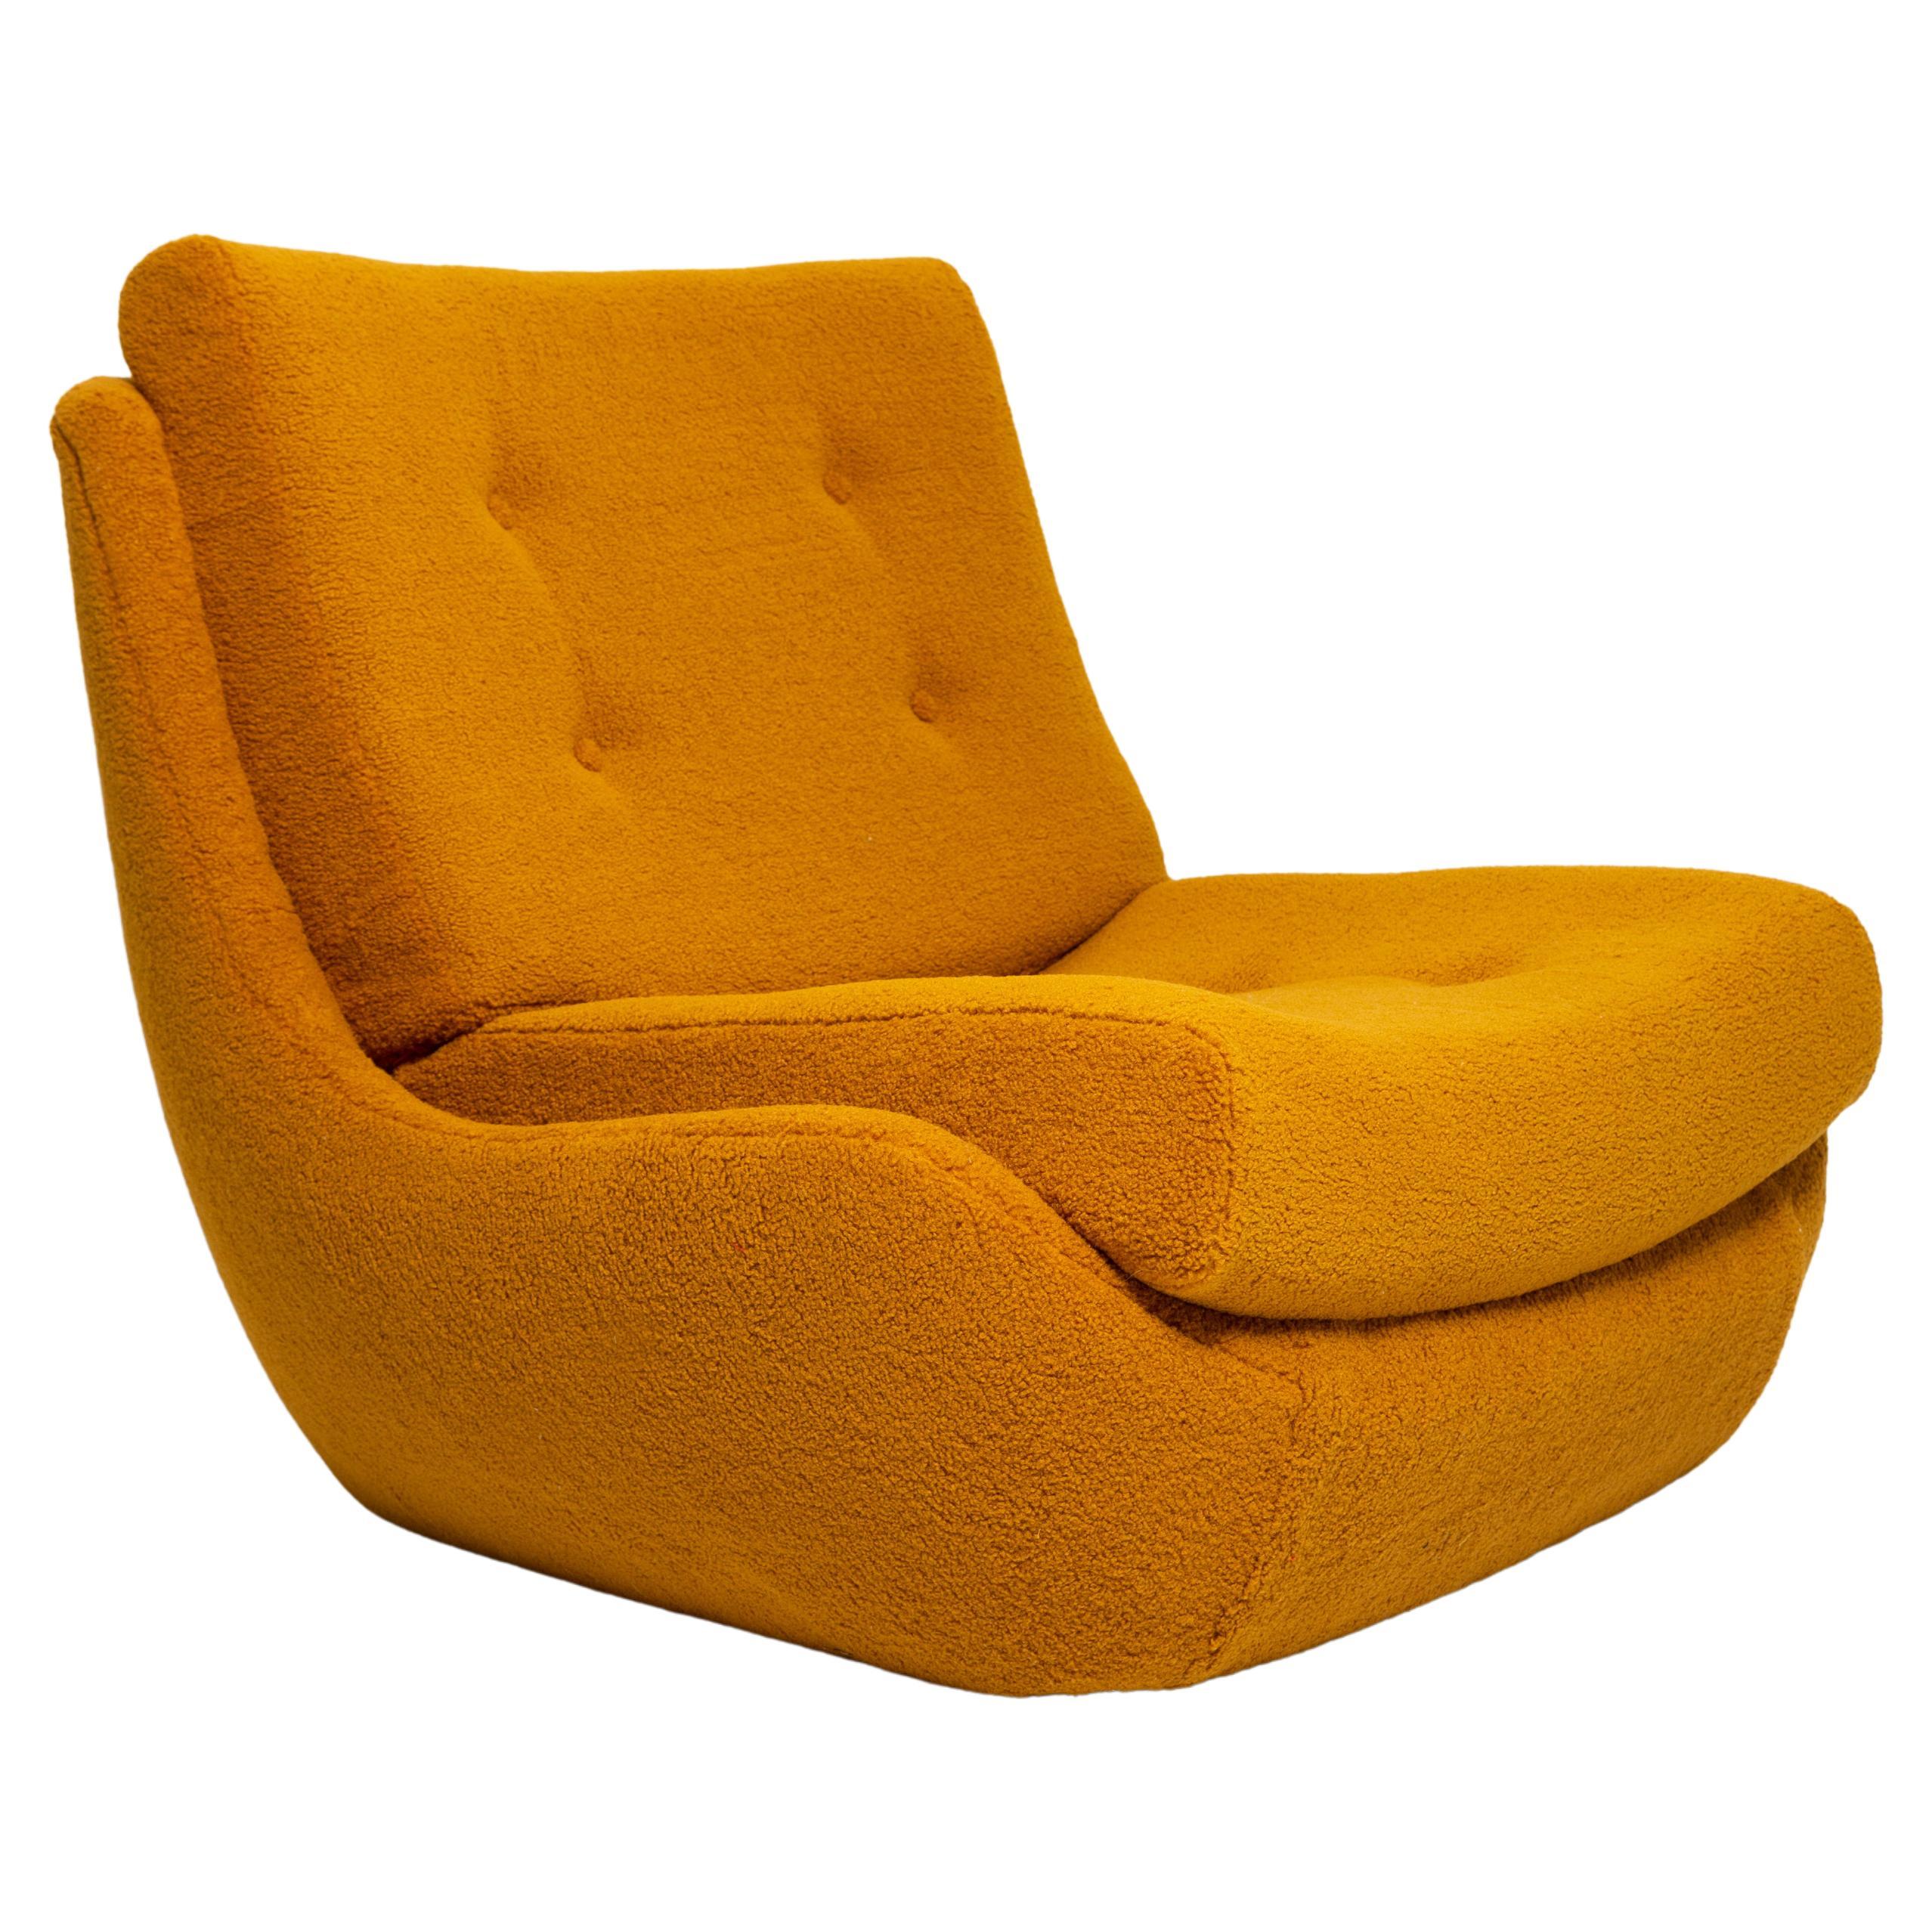 Grand fauteuil Atlantis jaune ocre bouclé vintage du 20ème siècle, années 1960